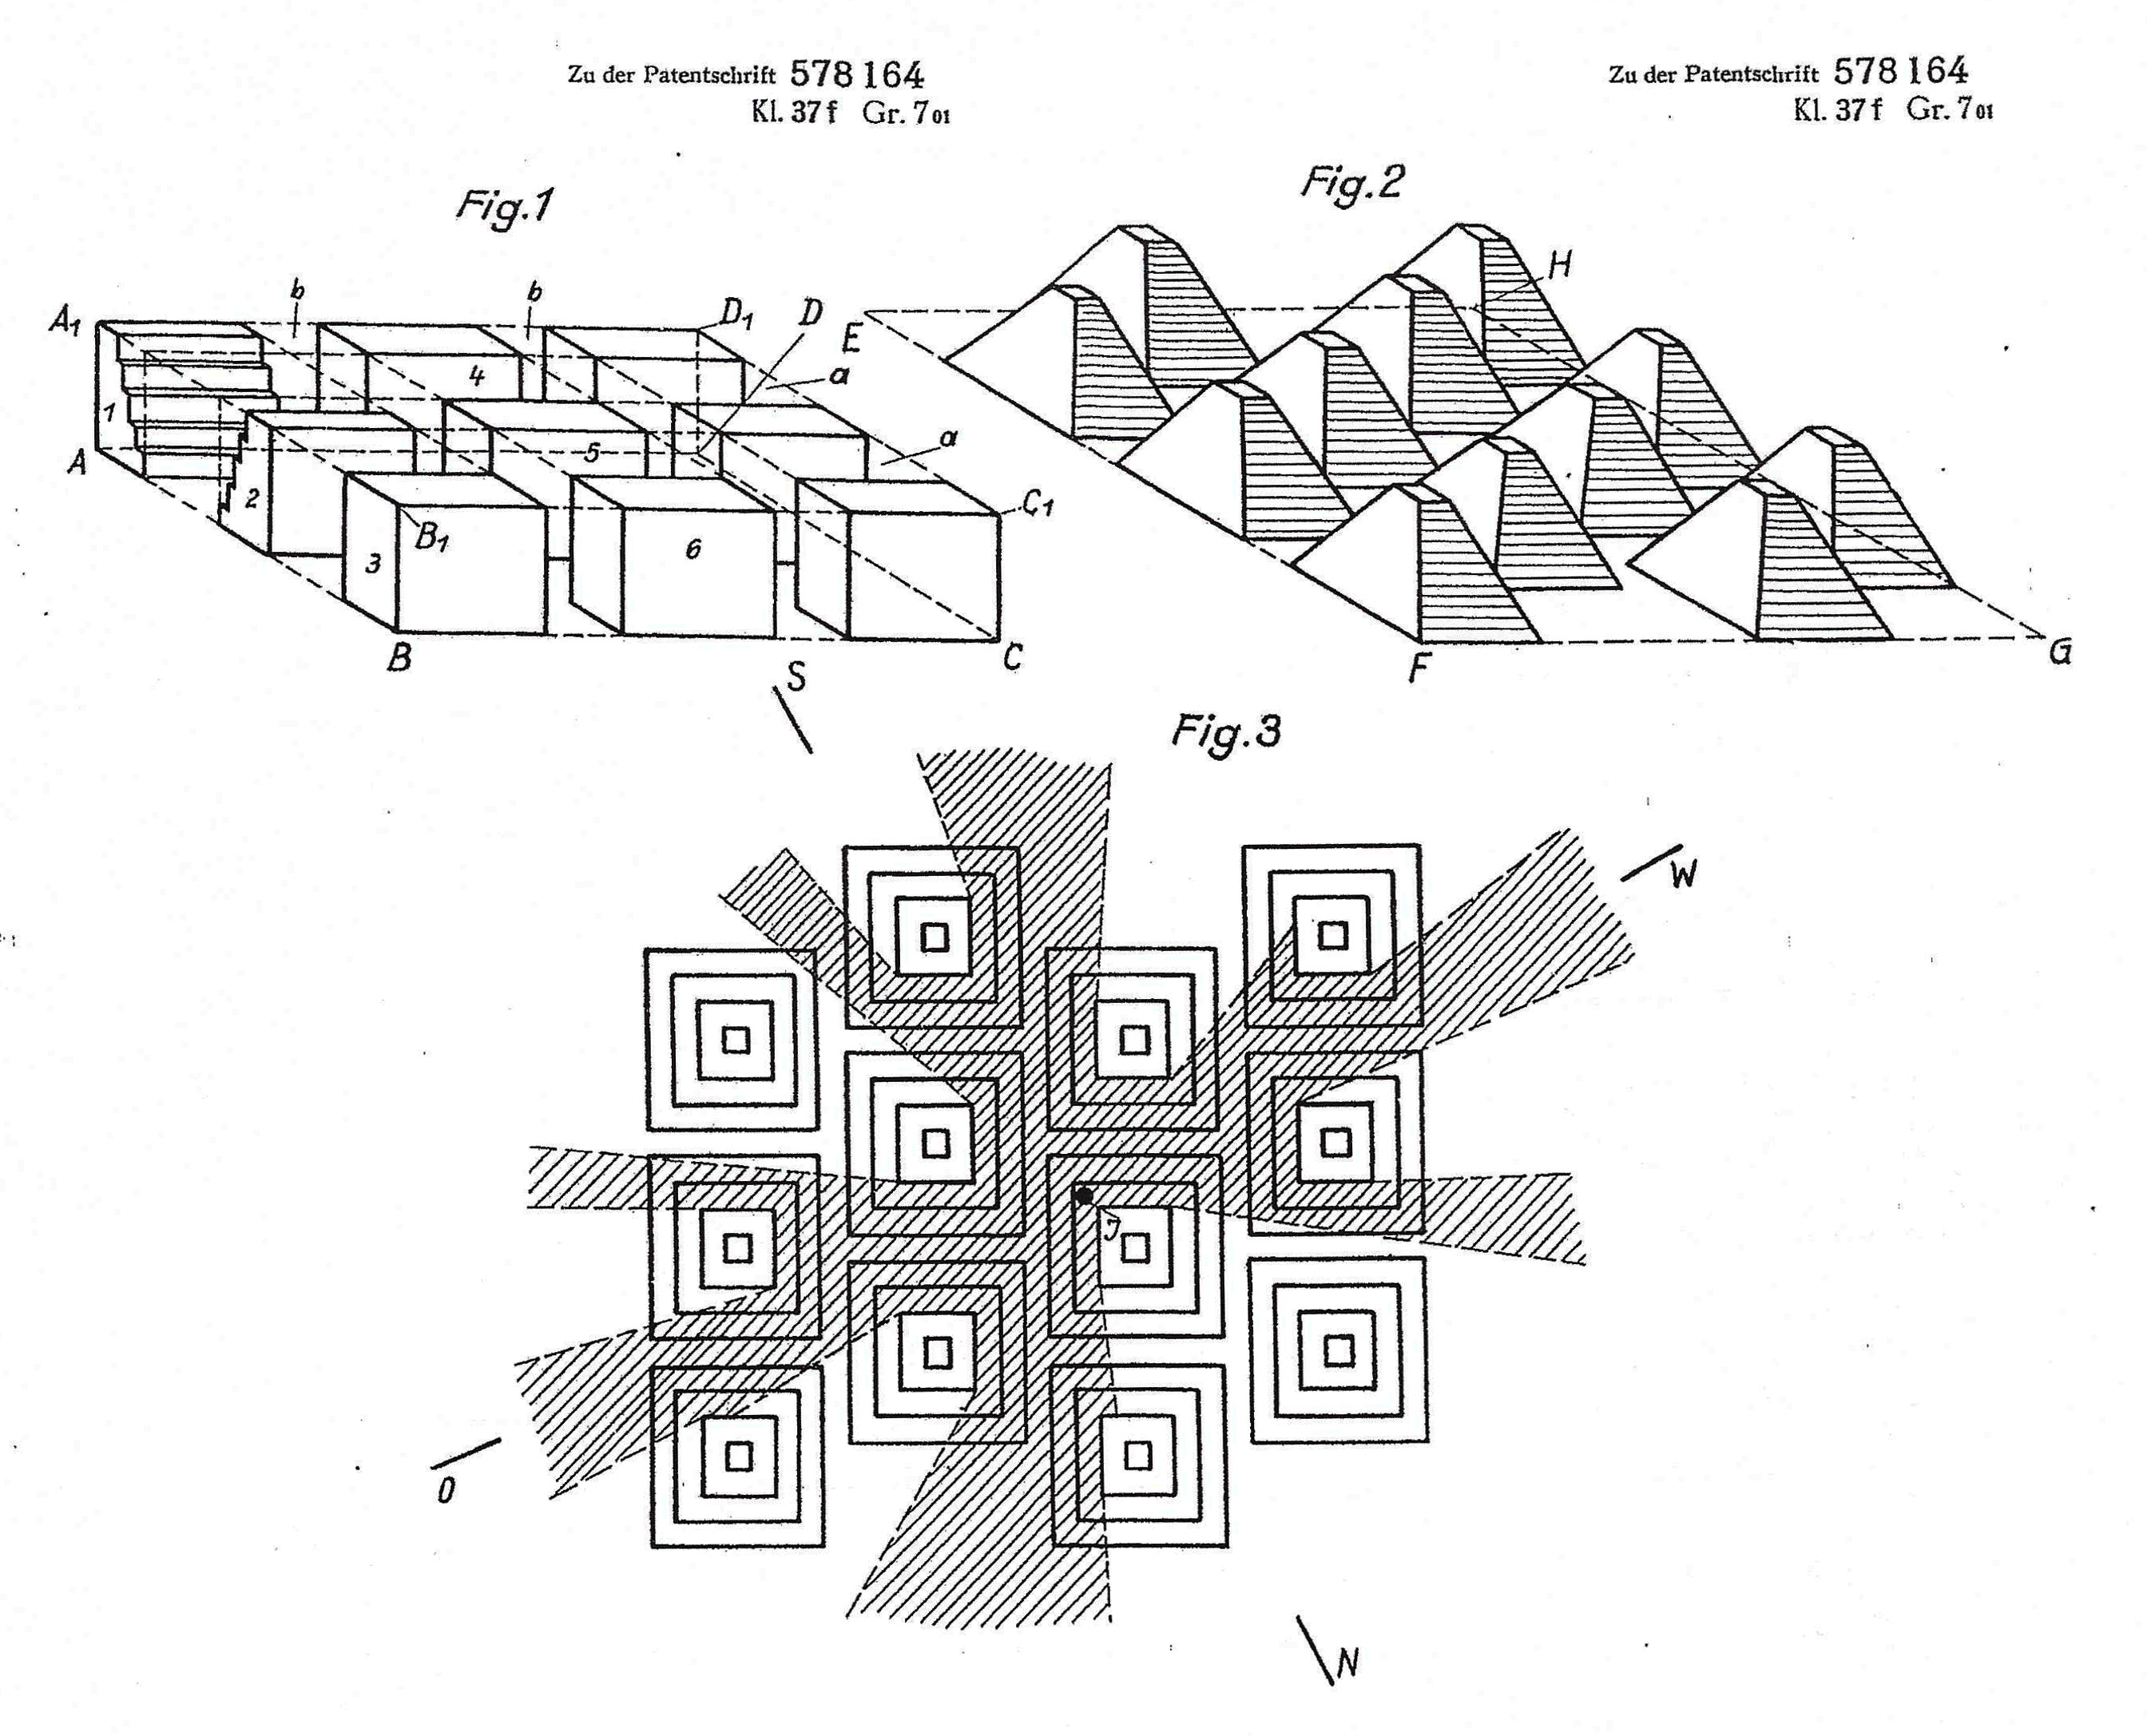 Peter Behrens (1930), Aus mehr- und vielgeschossigen Einzelhäusern bestehender Baublock, Patent No. 578 164, Berlin